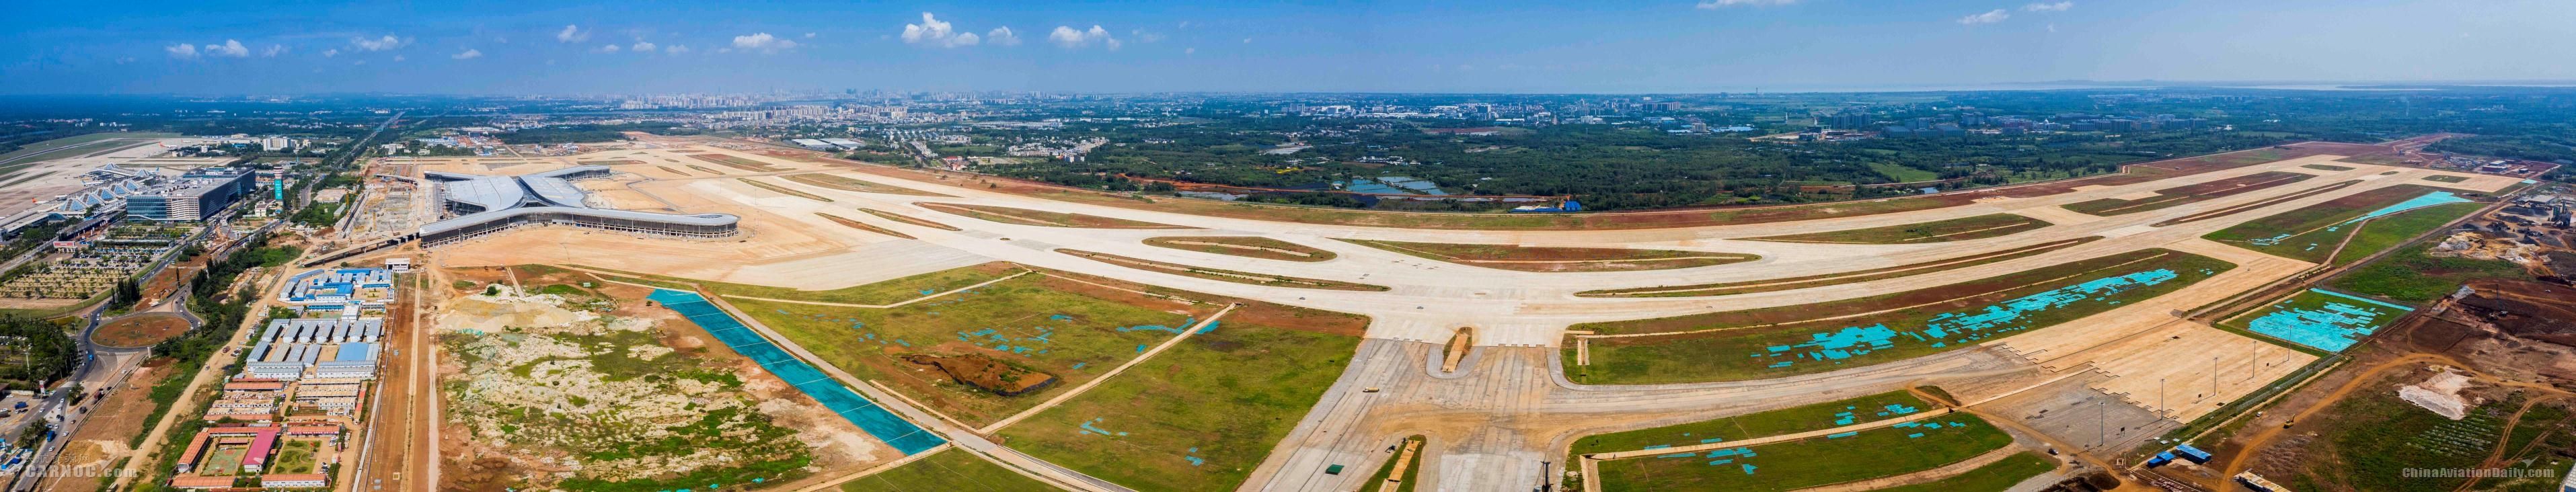 美兰机场二期扩建项目飞行区工程正式启动竣工验收-亚美尼亚的国际快递